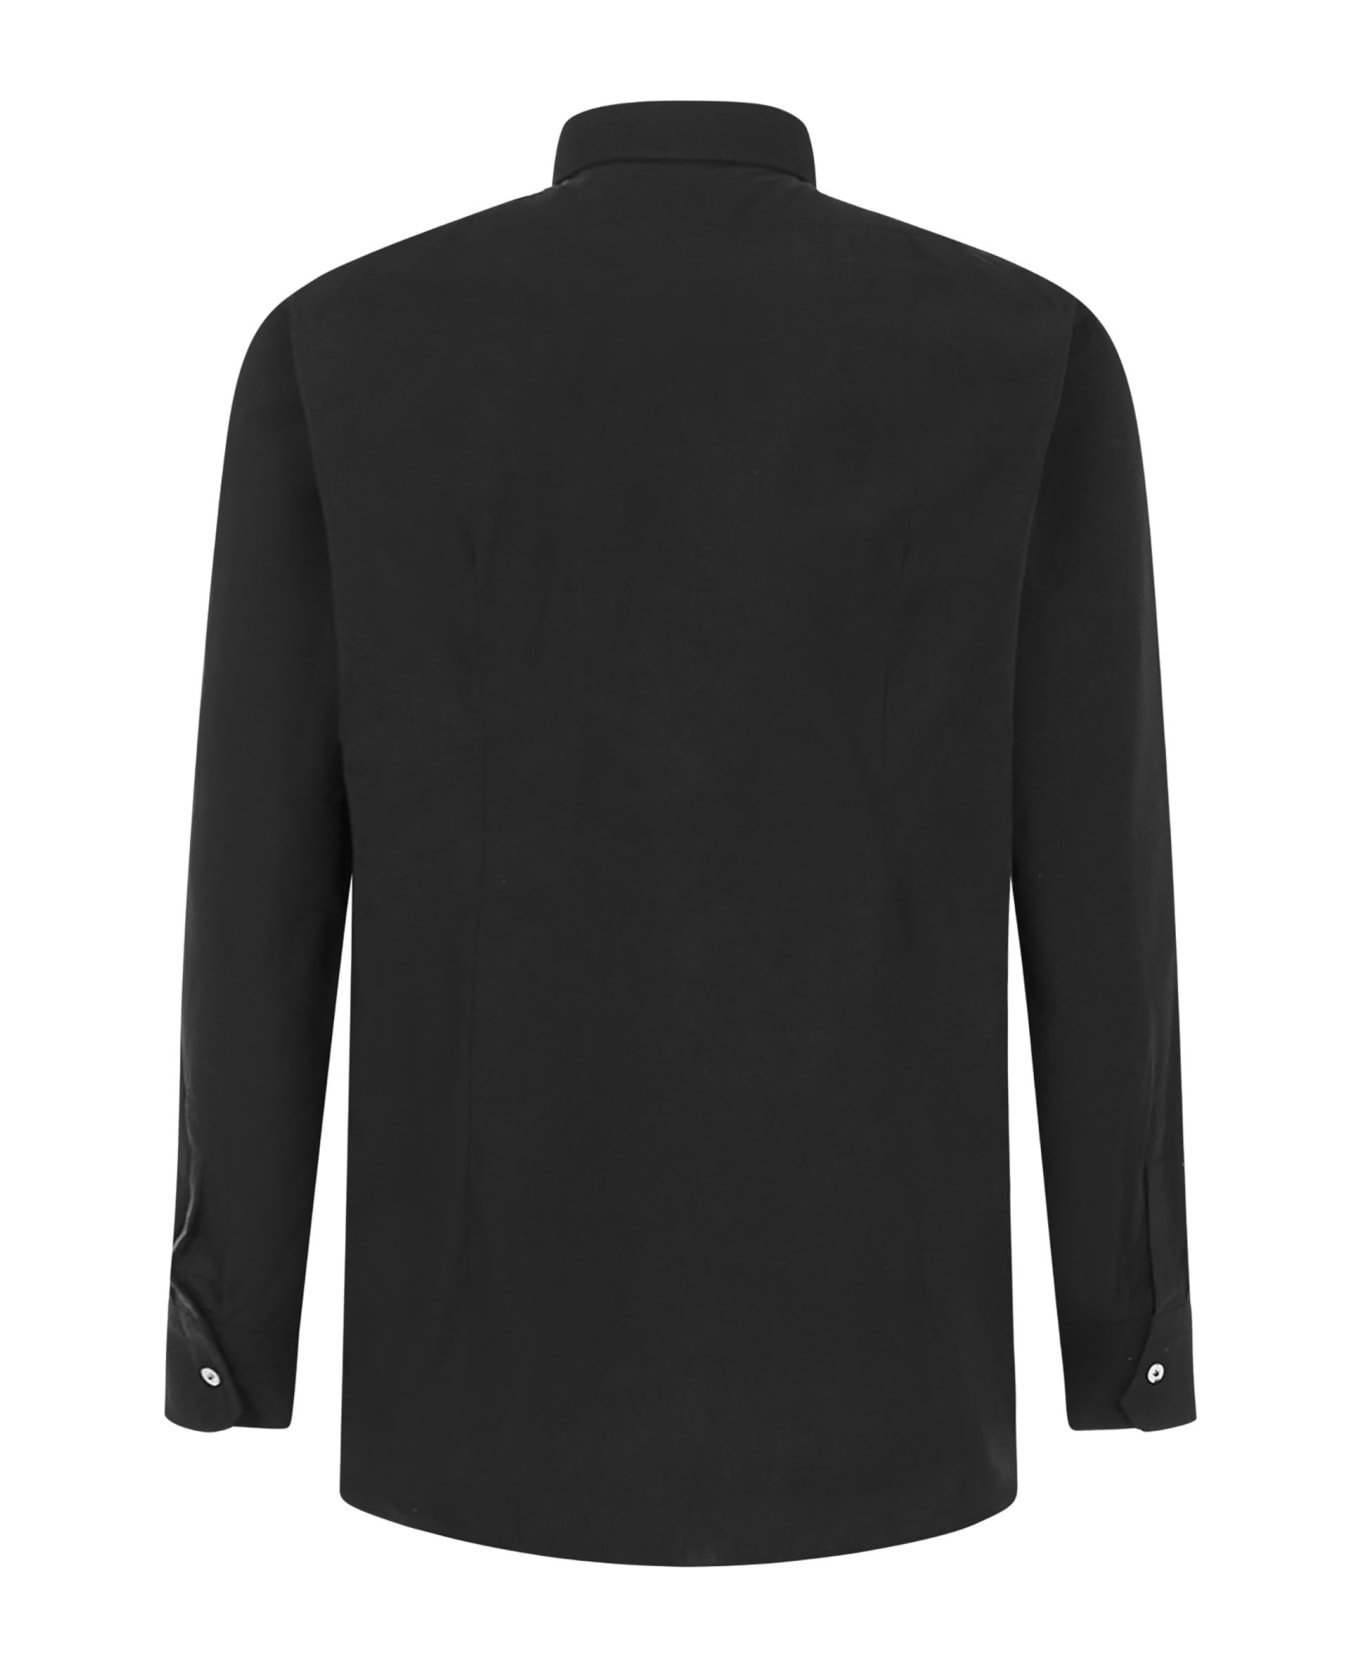 Gabriele Pasini X Lubiam Shirt - Black